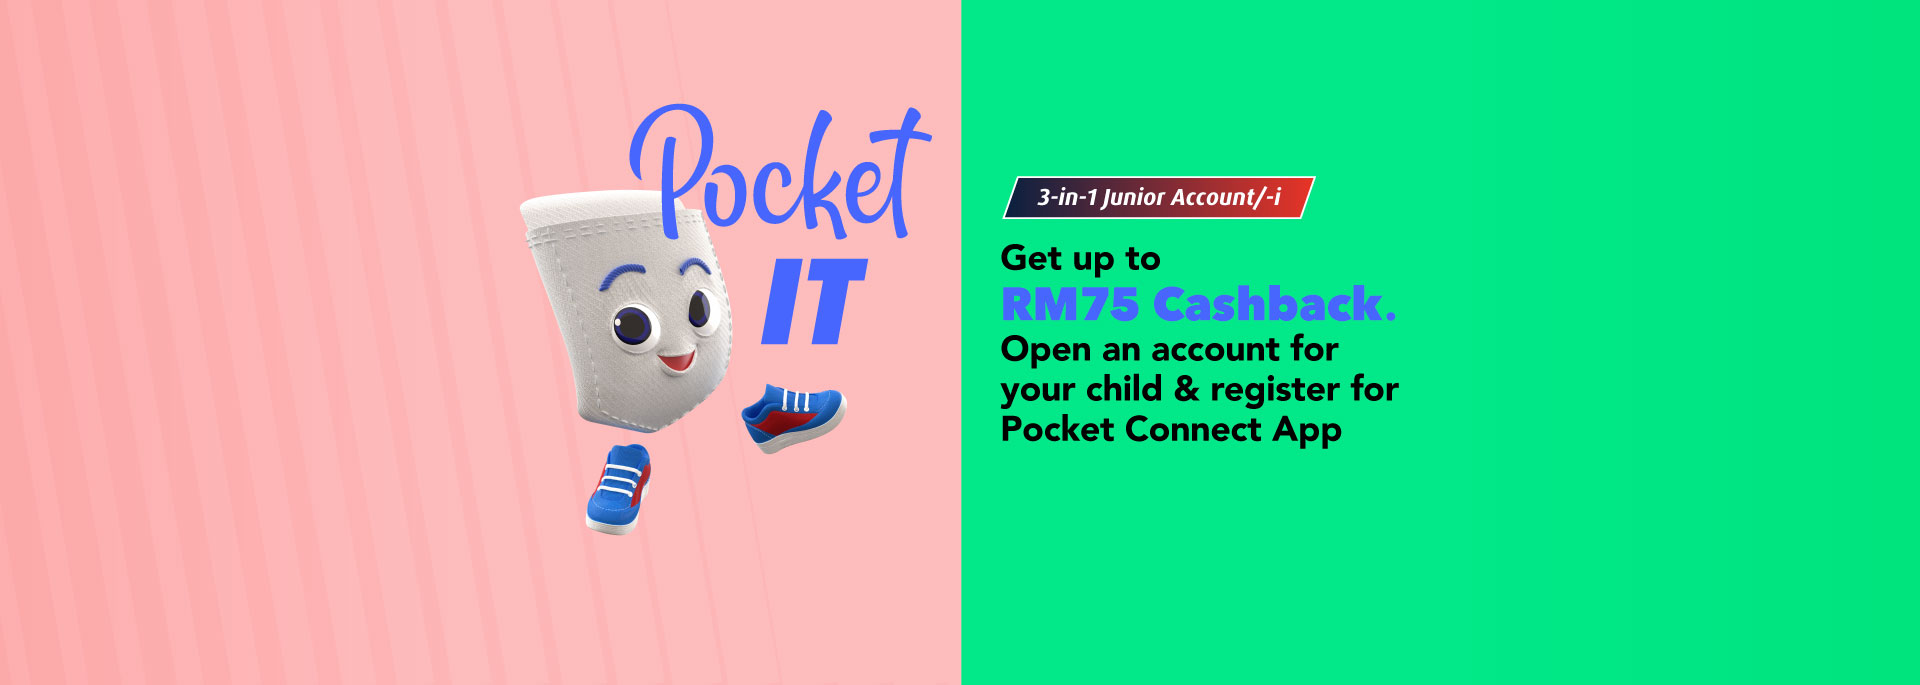 3-in-1 Jnr Acc & Pocket App: Up to RM75 Cashback